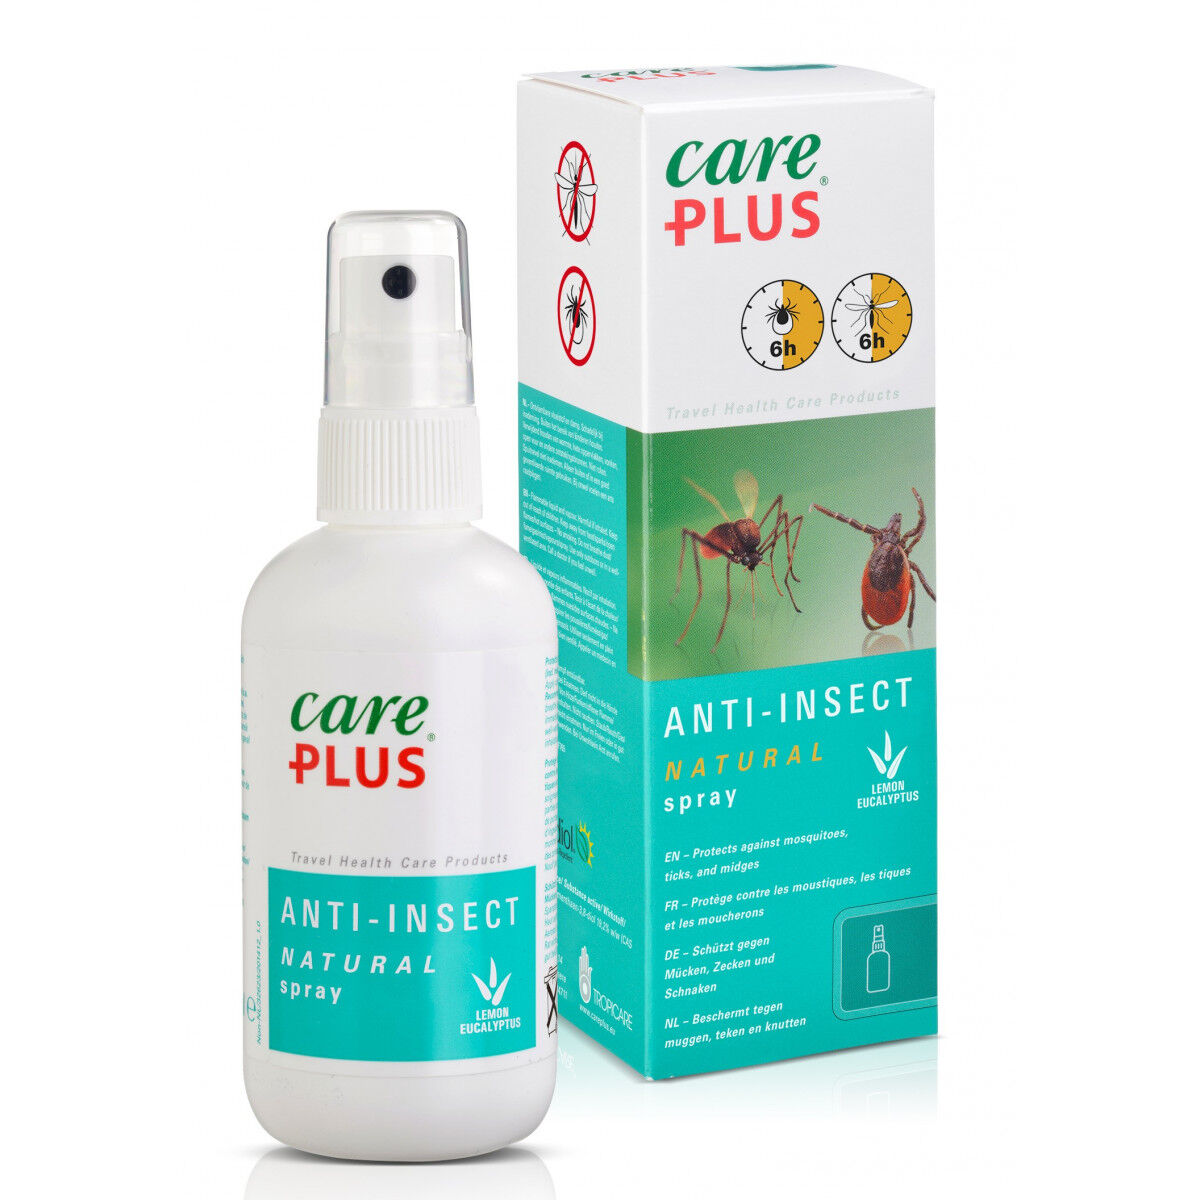 Care Plus Anti-Insect - Natural spray Citriodiol - Protezioni contro gli insetti